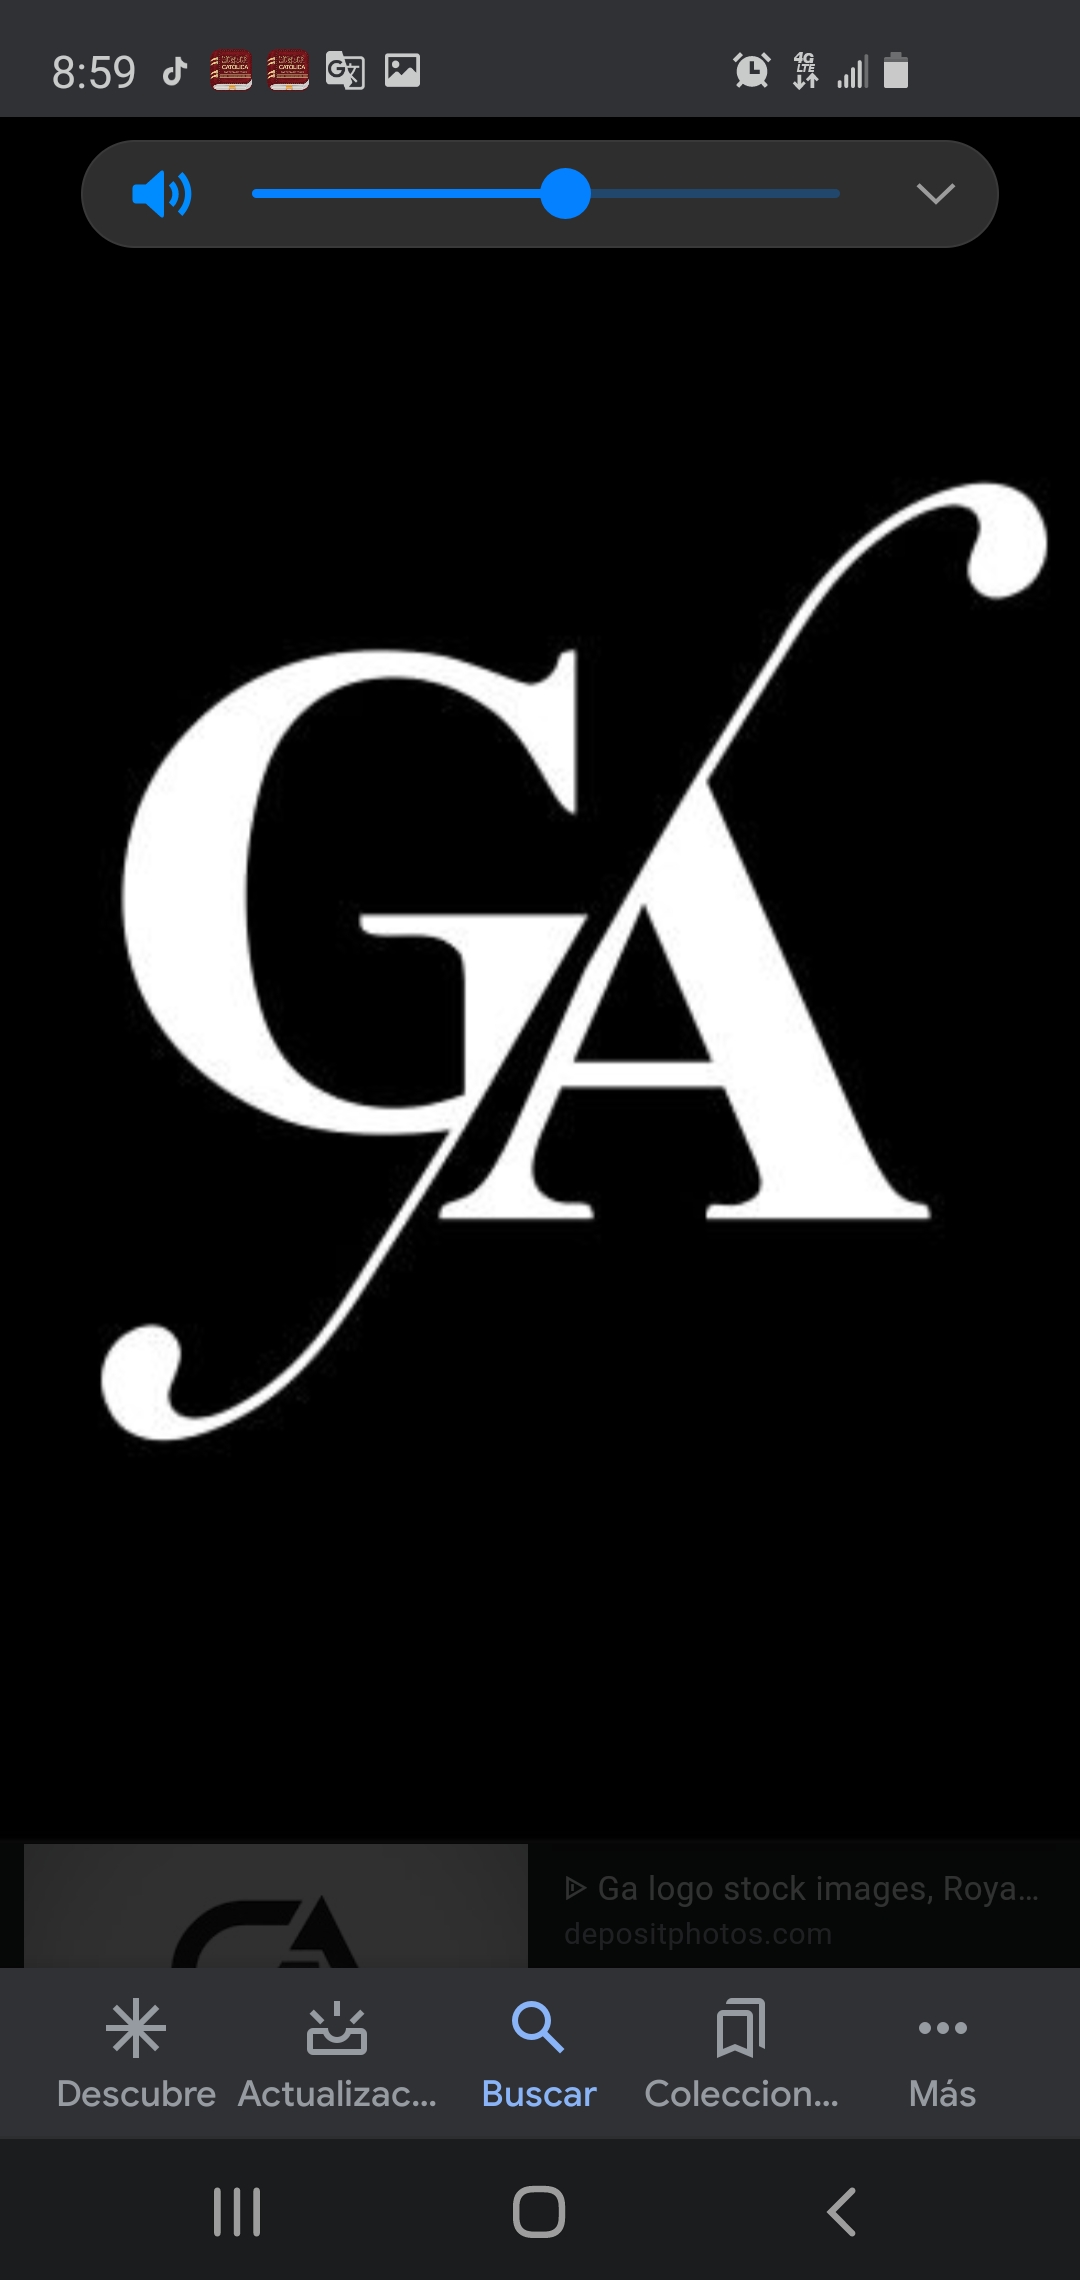 GA Landscaping Logo